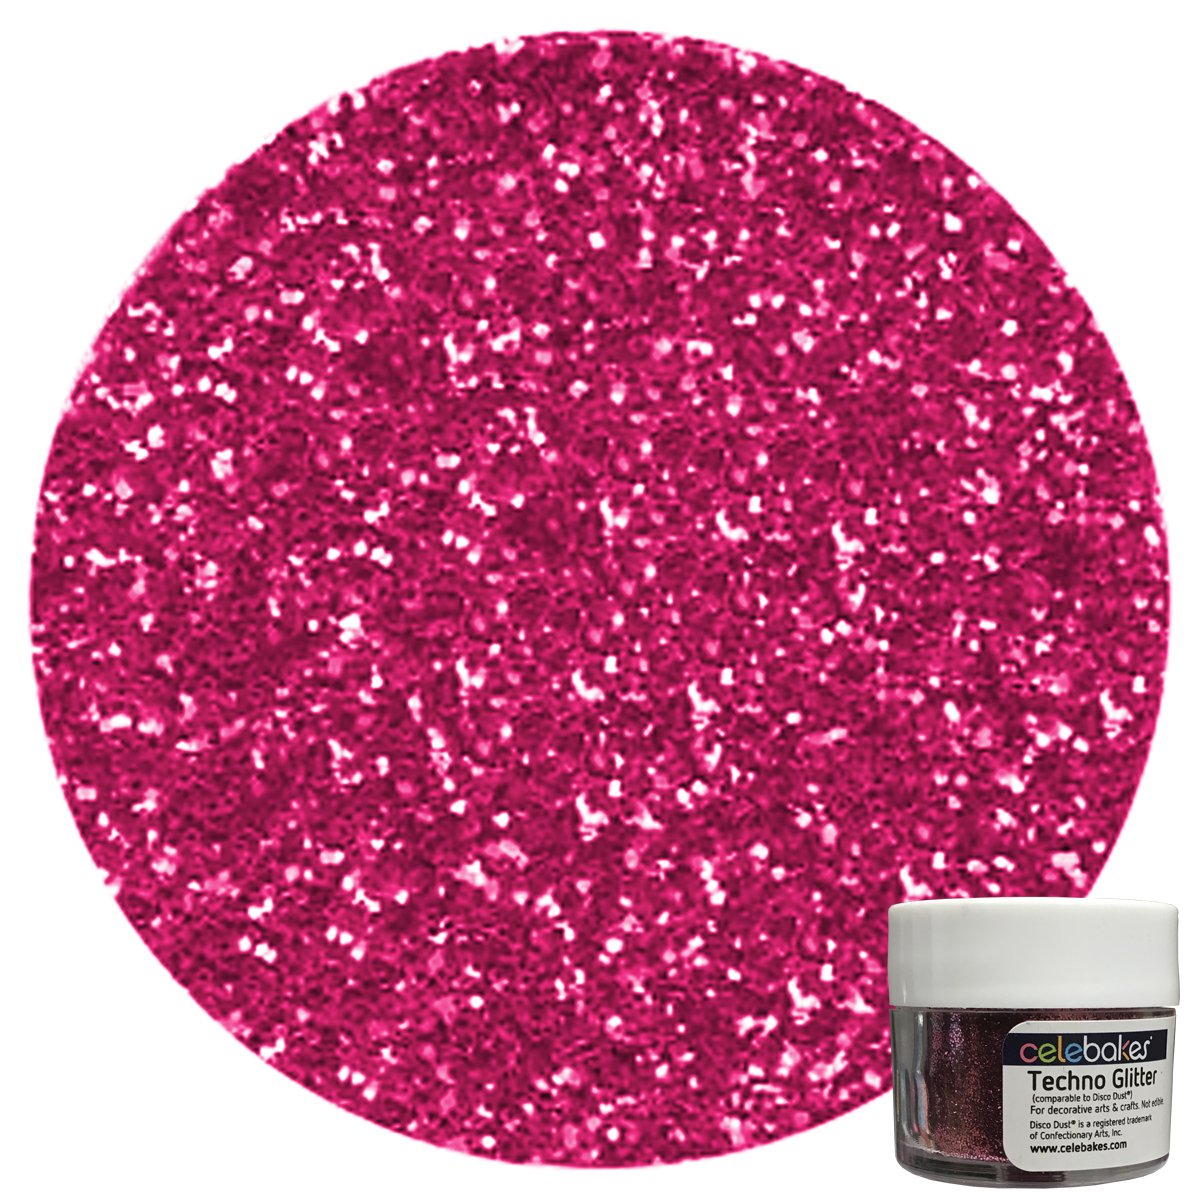 Celebakes Bright Pink Techno Glitter